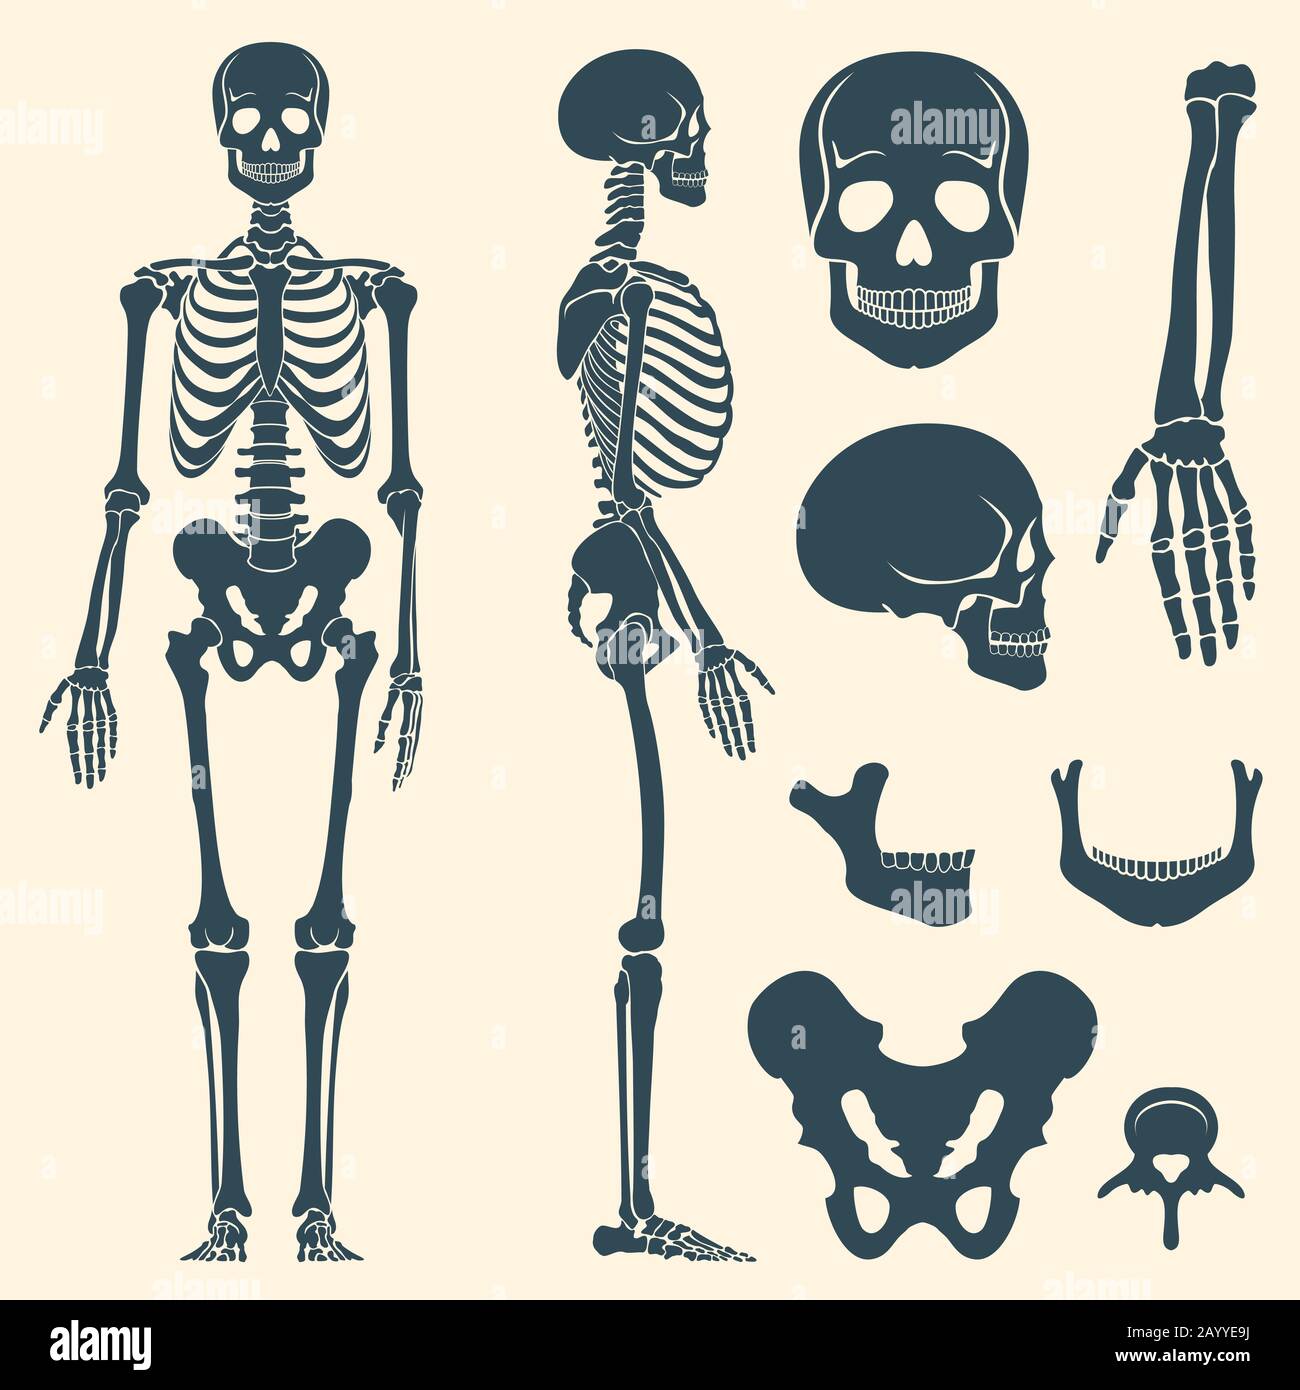 Esqueleto humano: Más de 490,123 ilustraciones y dibujos de stock